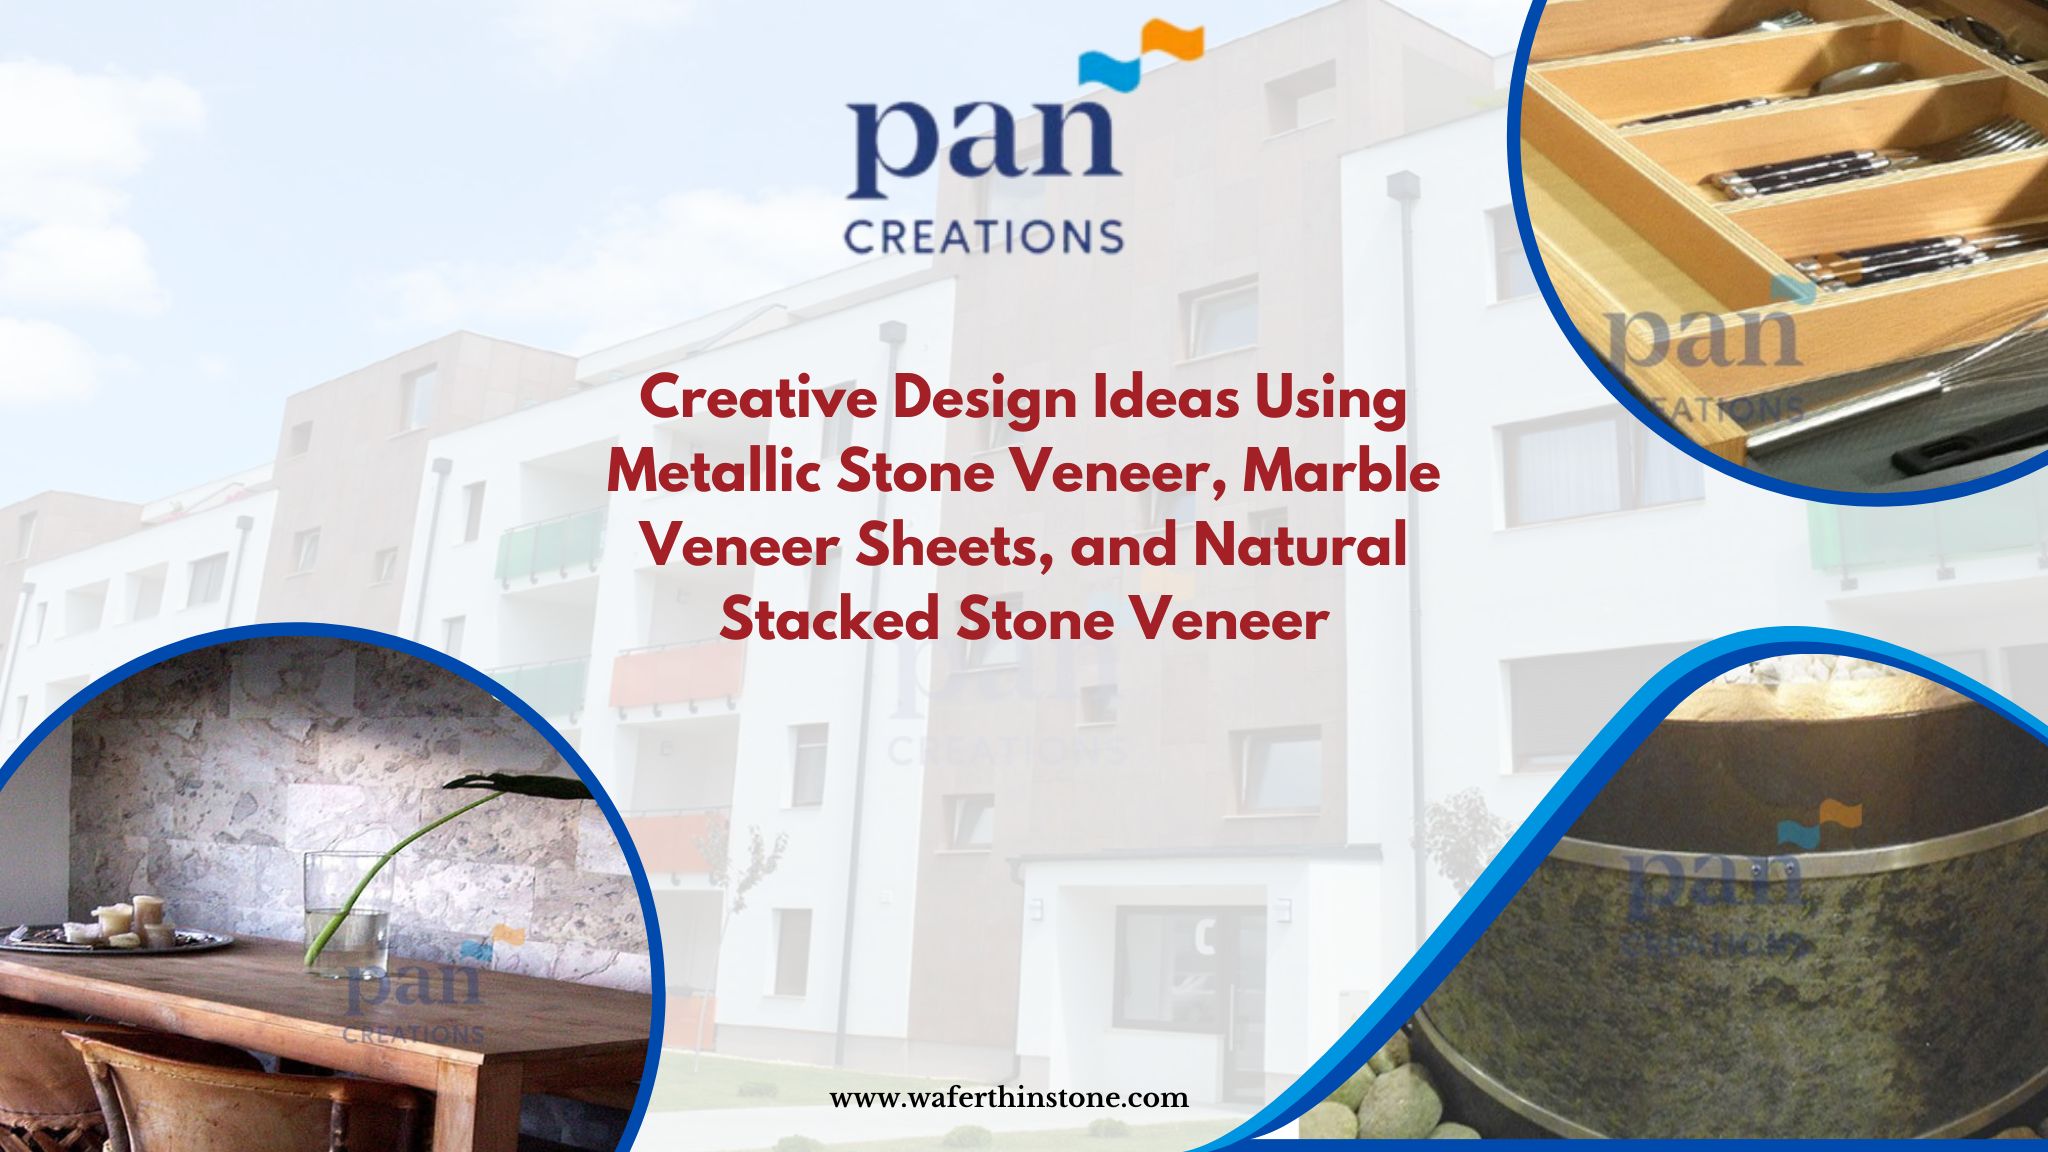 Creative Design Ideas Using Metallic Stone Veneer, Marble Veneer Sheets, and Natural Stacked Stone Veneer